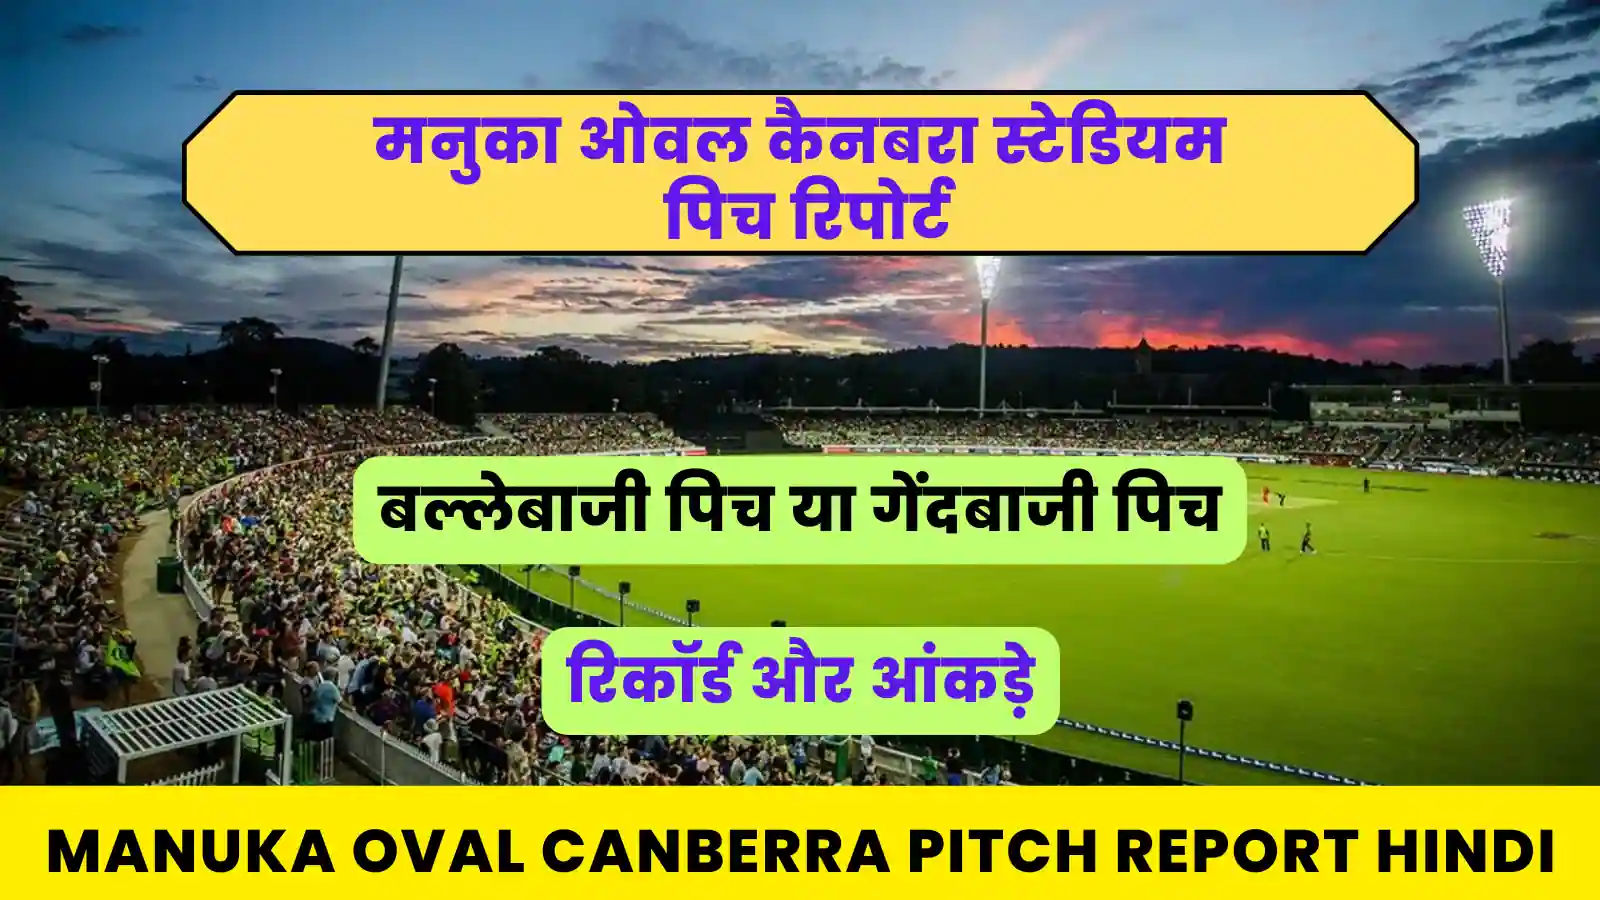 Manuka Oval Canberra Pitch Report Hindi